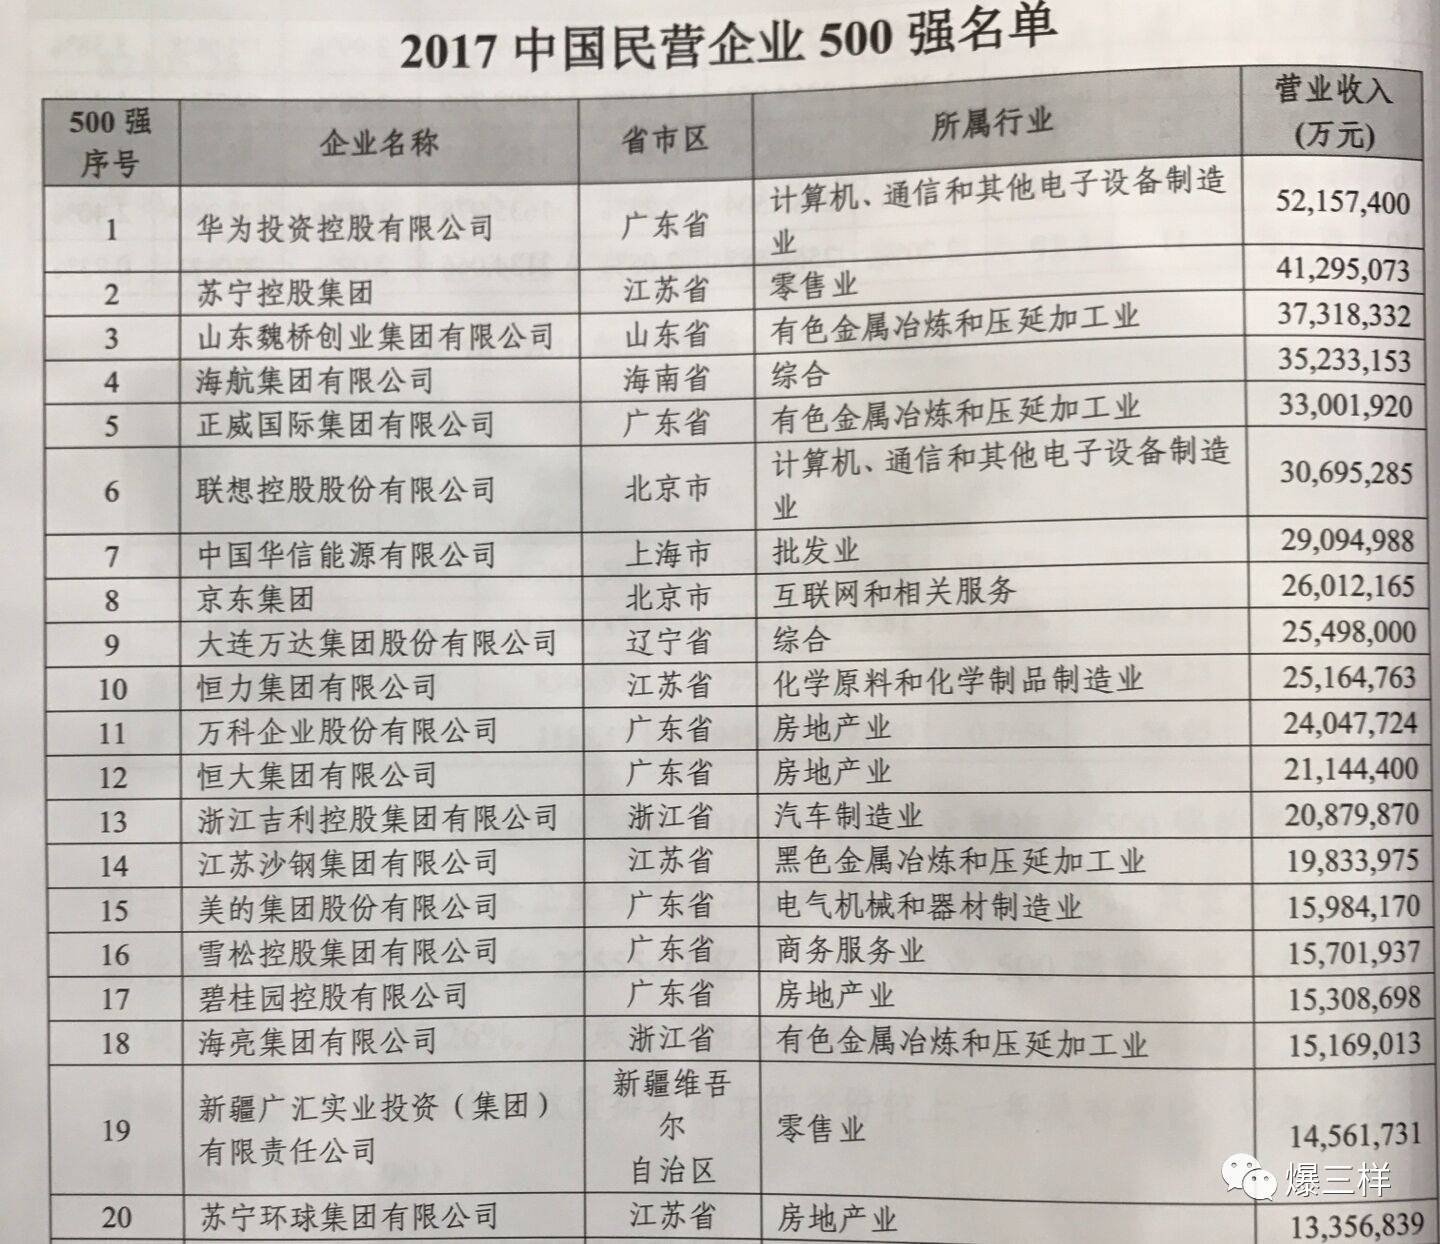 重磅!2017中国民企500强揭晓:华为苏宁魏桥居